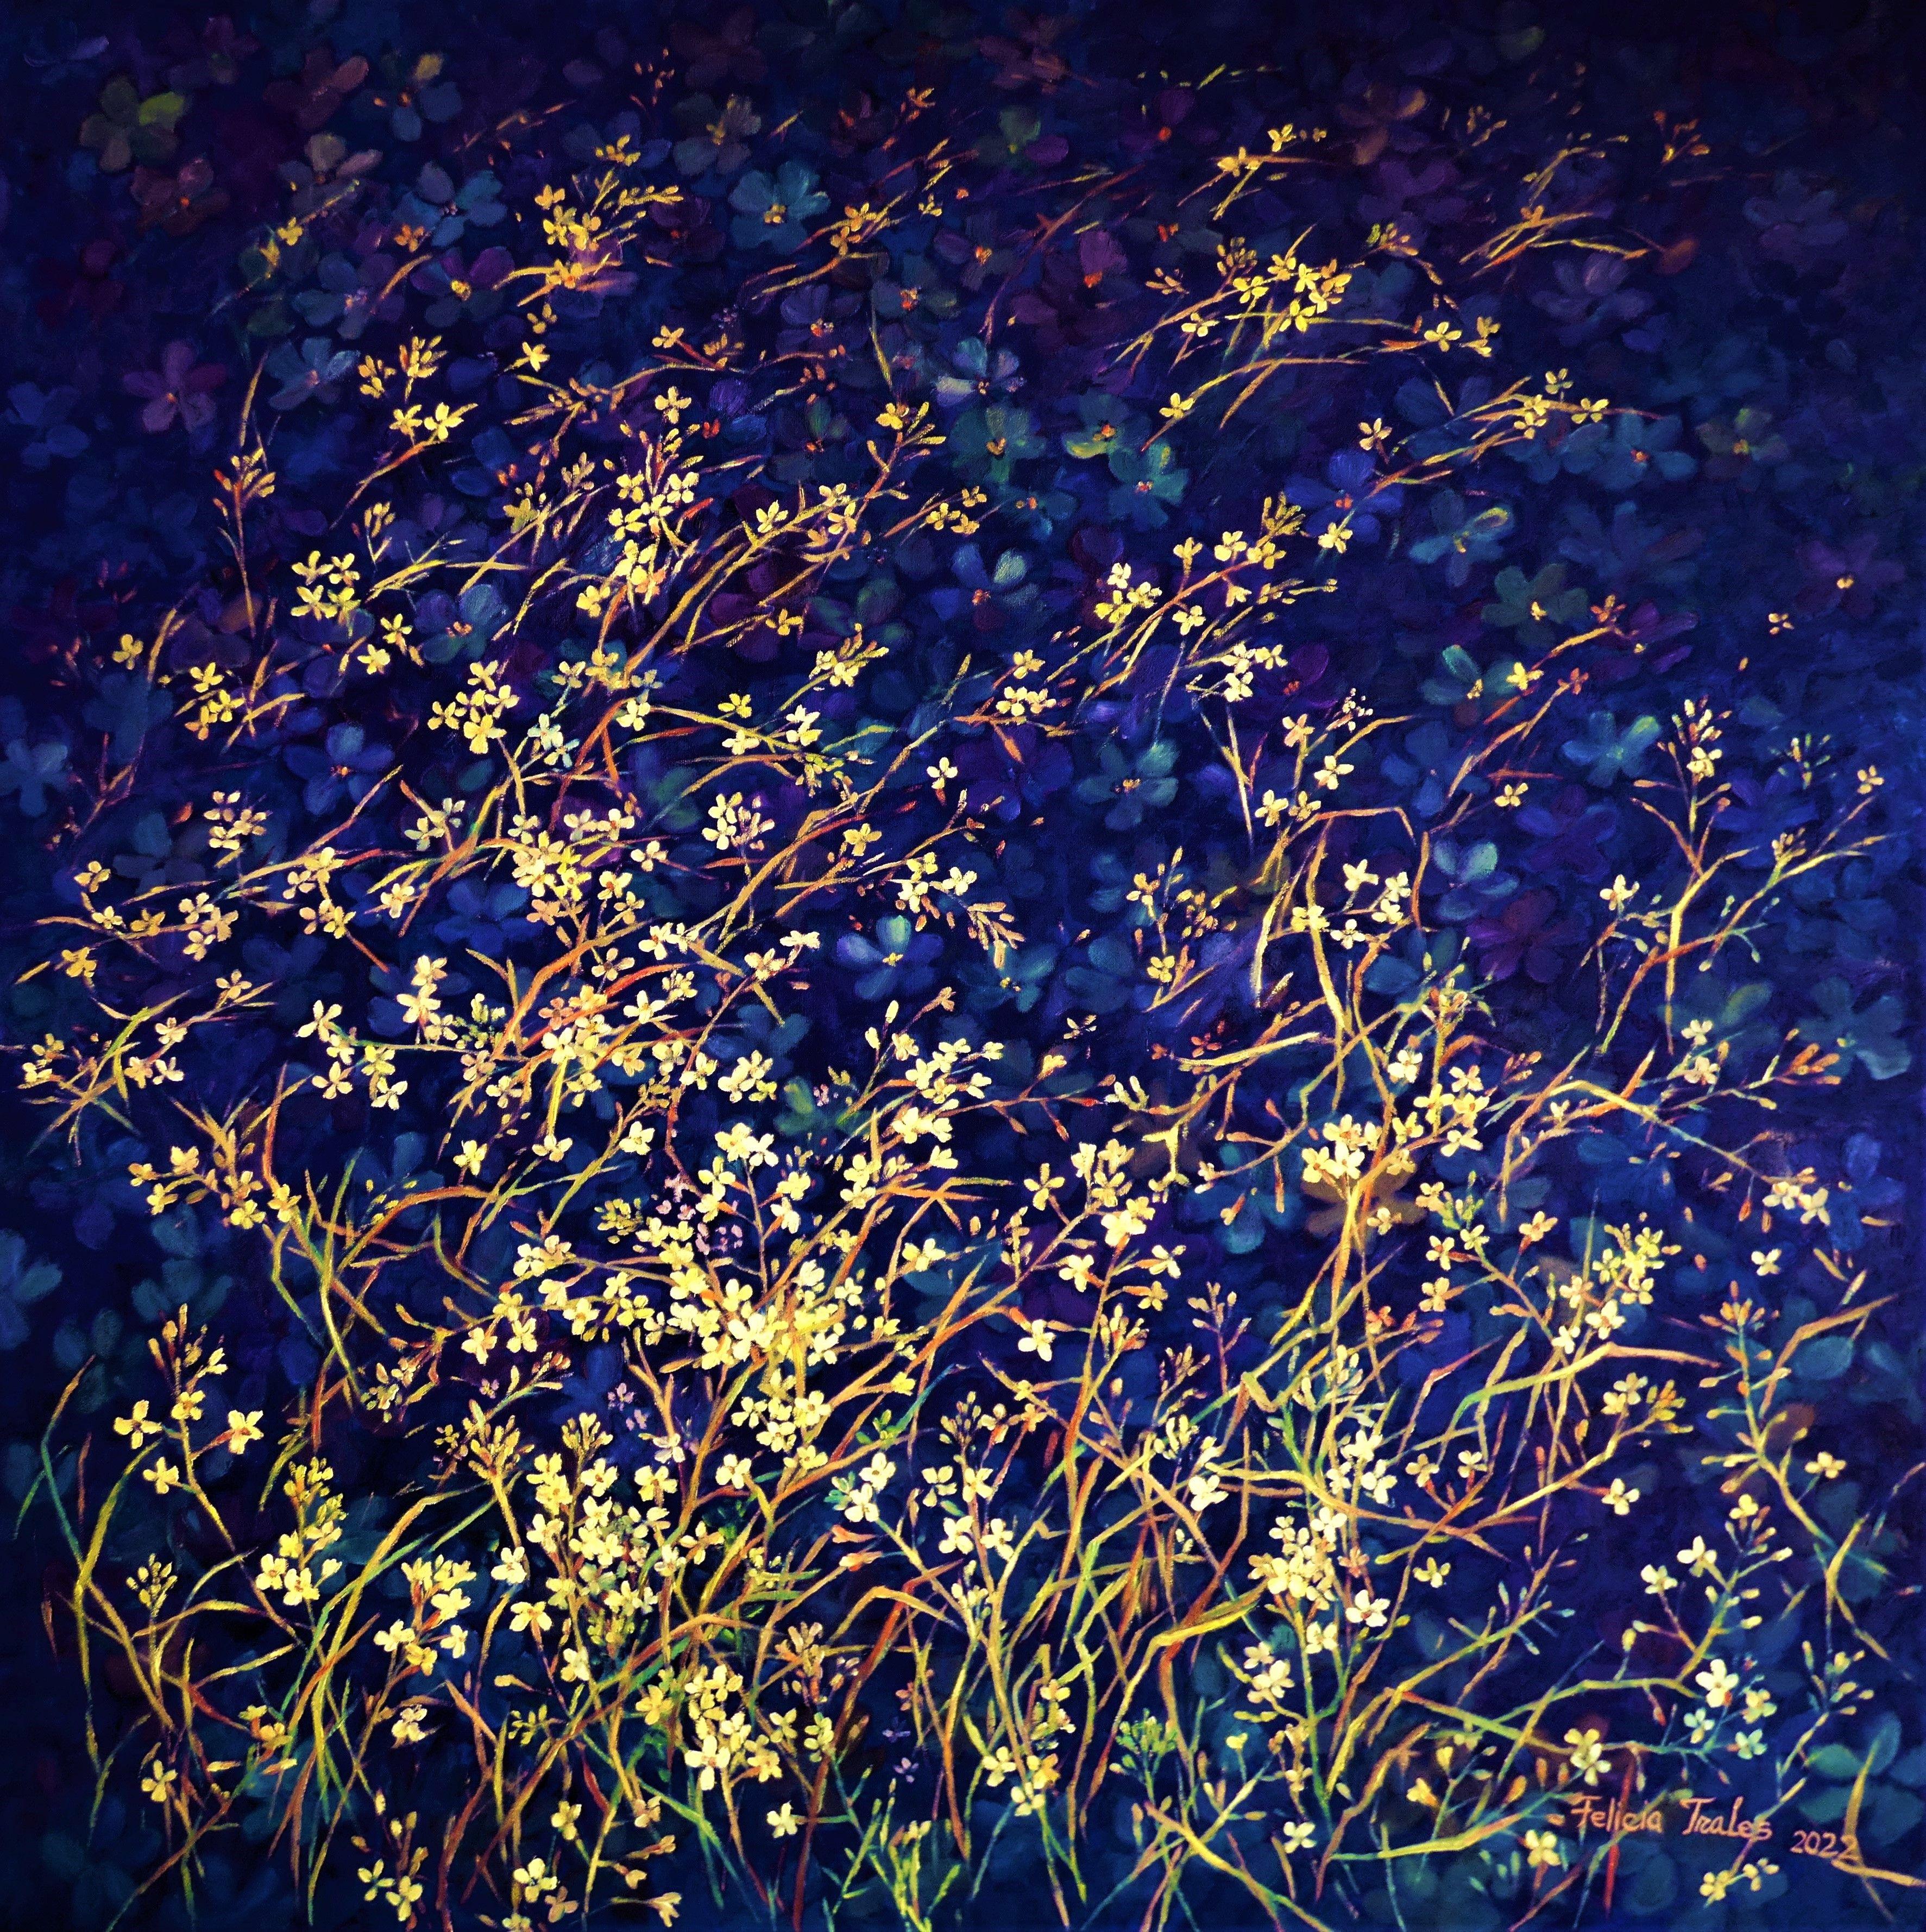 Peinture, huile sur toile, bleu profond « Lights on Deep Blue » - Painting de Felicia Trales